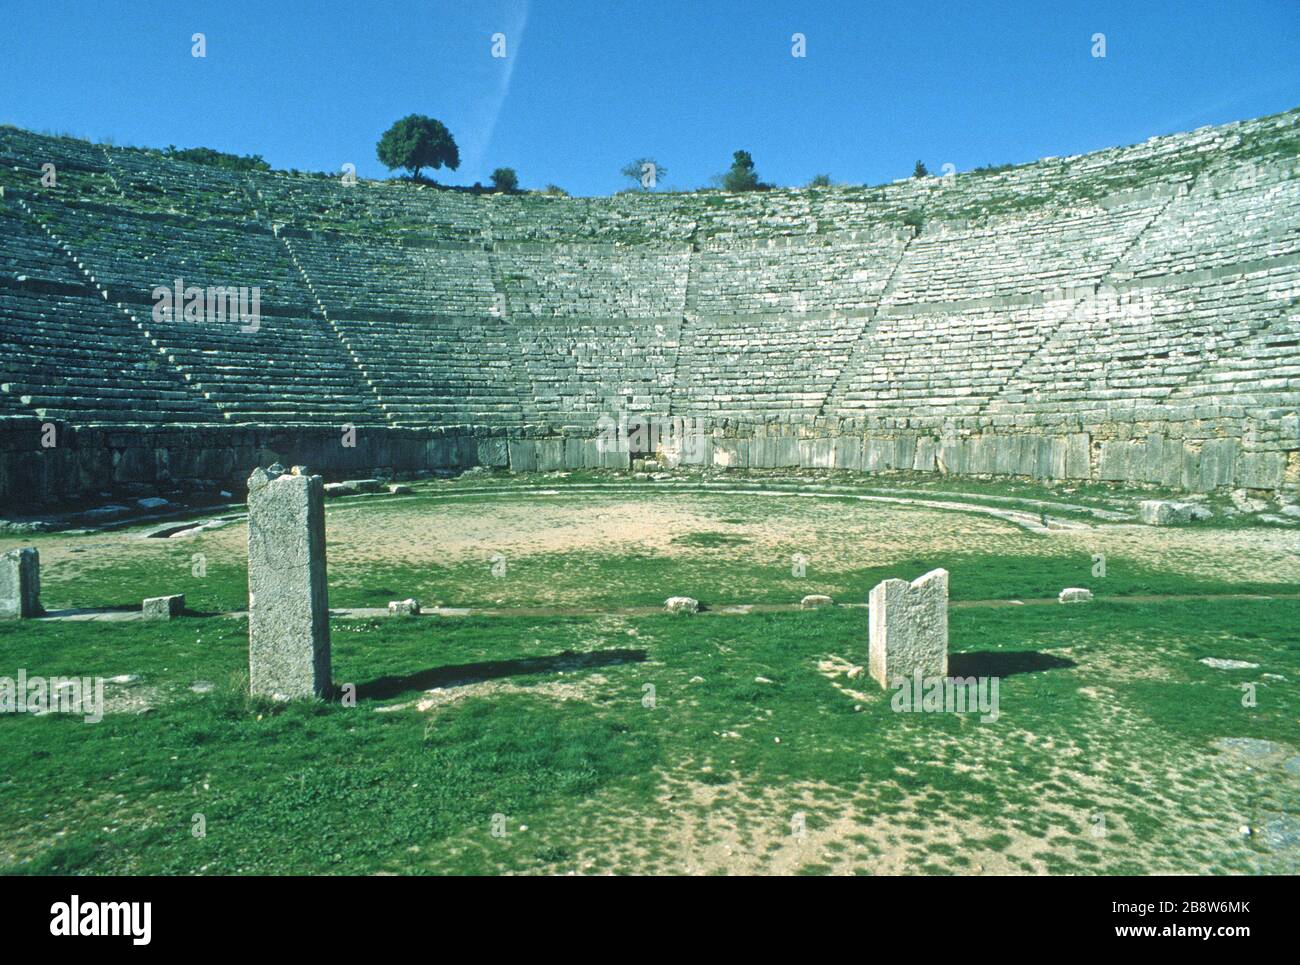 Das antike griechische Theater in Dodoni, Ioannina, Epirus, Griechenland, von den Darstellern aus gesehen, zeigt geschwungene Reihen von Steinsitzen, die auf die Bühne hinunter schauen und zu jeder Ebene hinaufsteigen. Blauer Himmel im Hintergrund. Dodoni ist eines von 15 antiken griechischen Theatern mit vorläufigem Status als UNESCO-Weltkulturerbe. Stockfoto